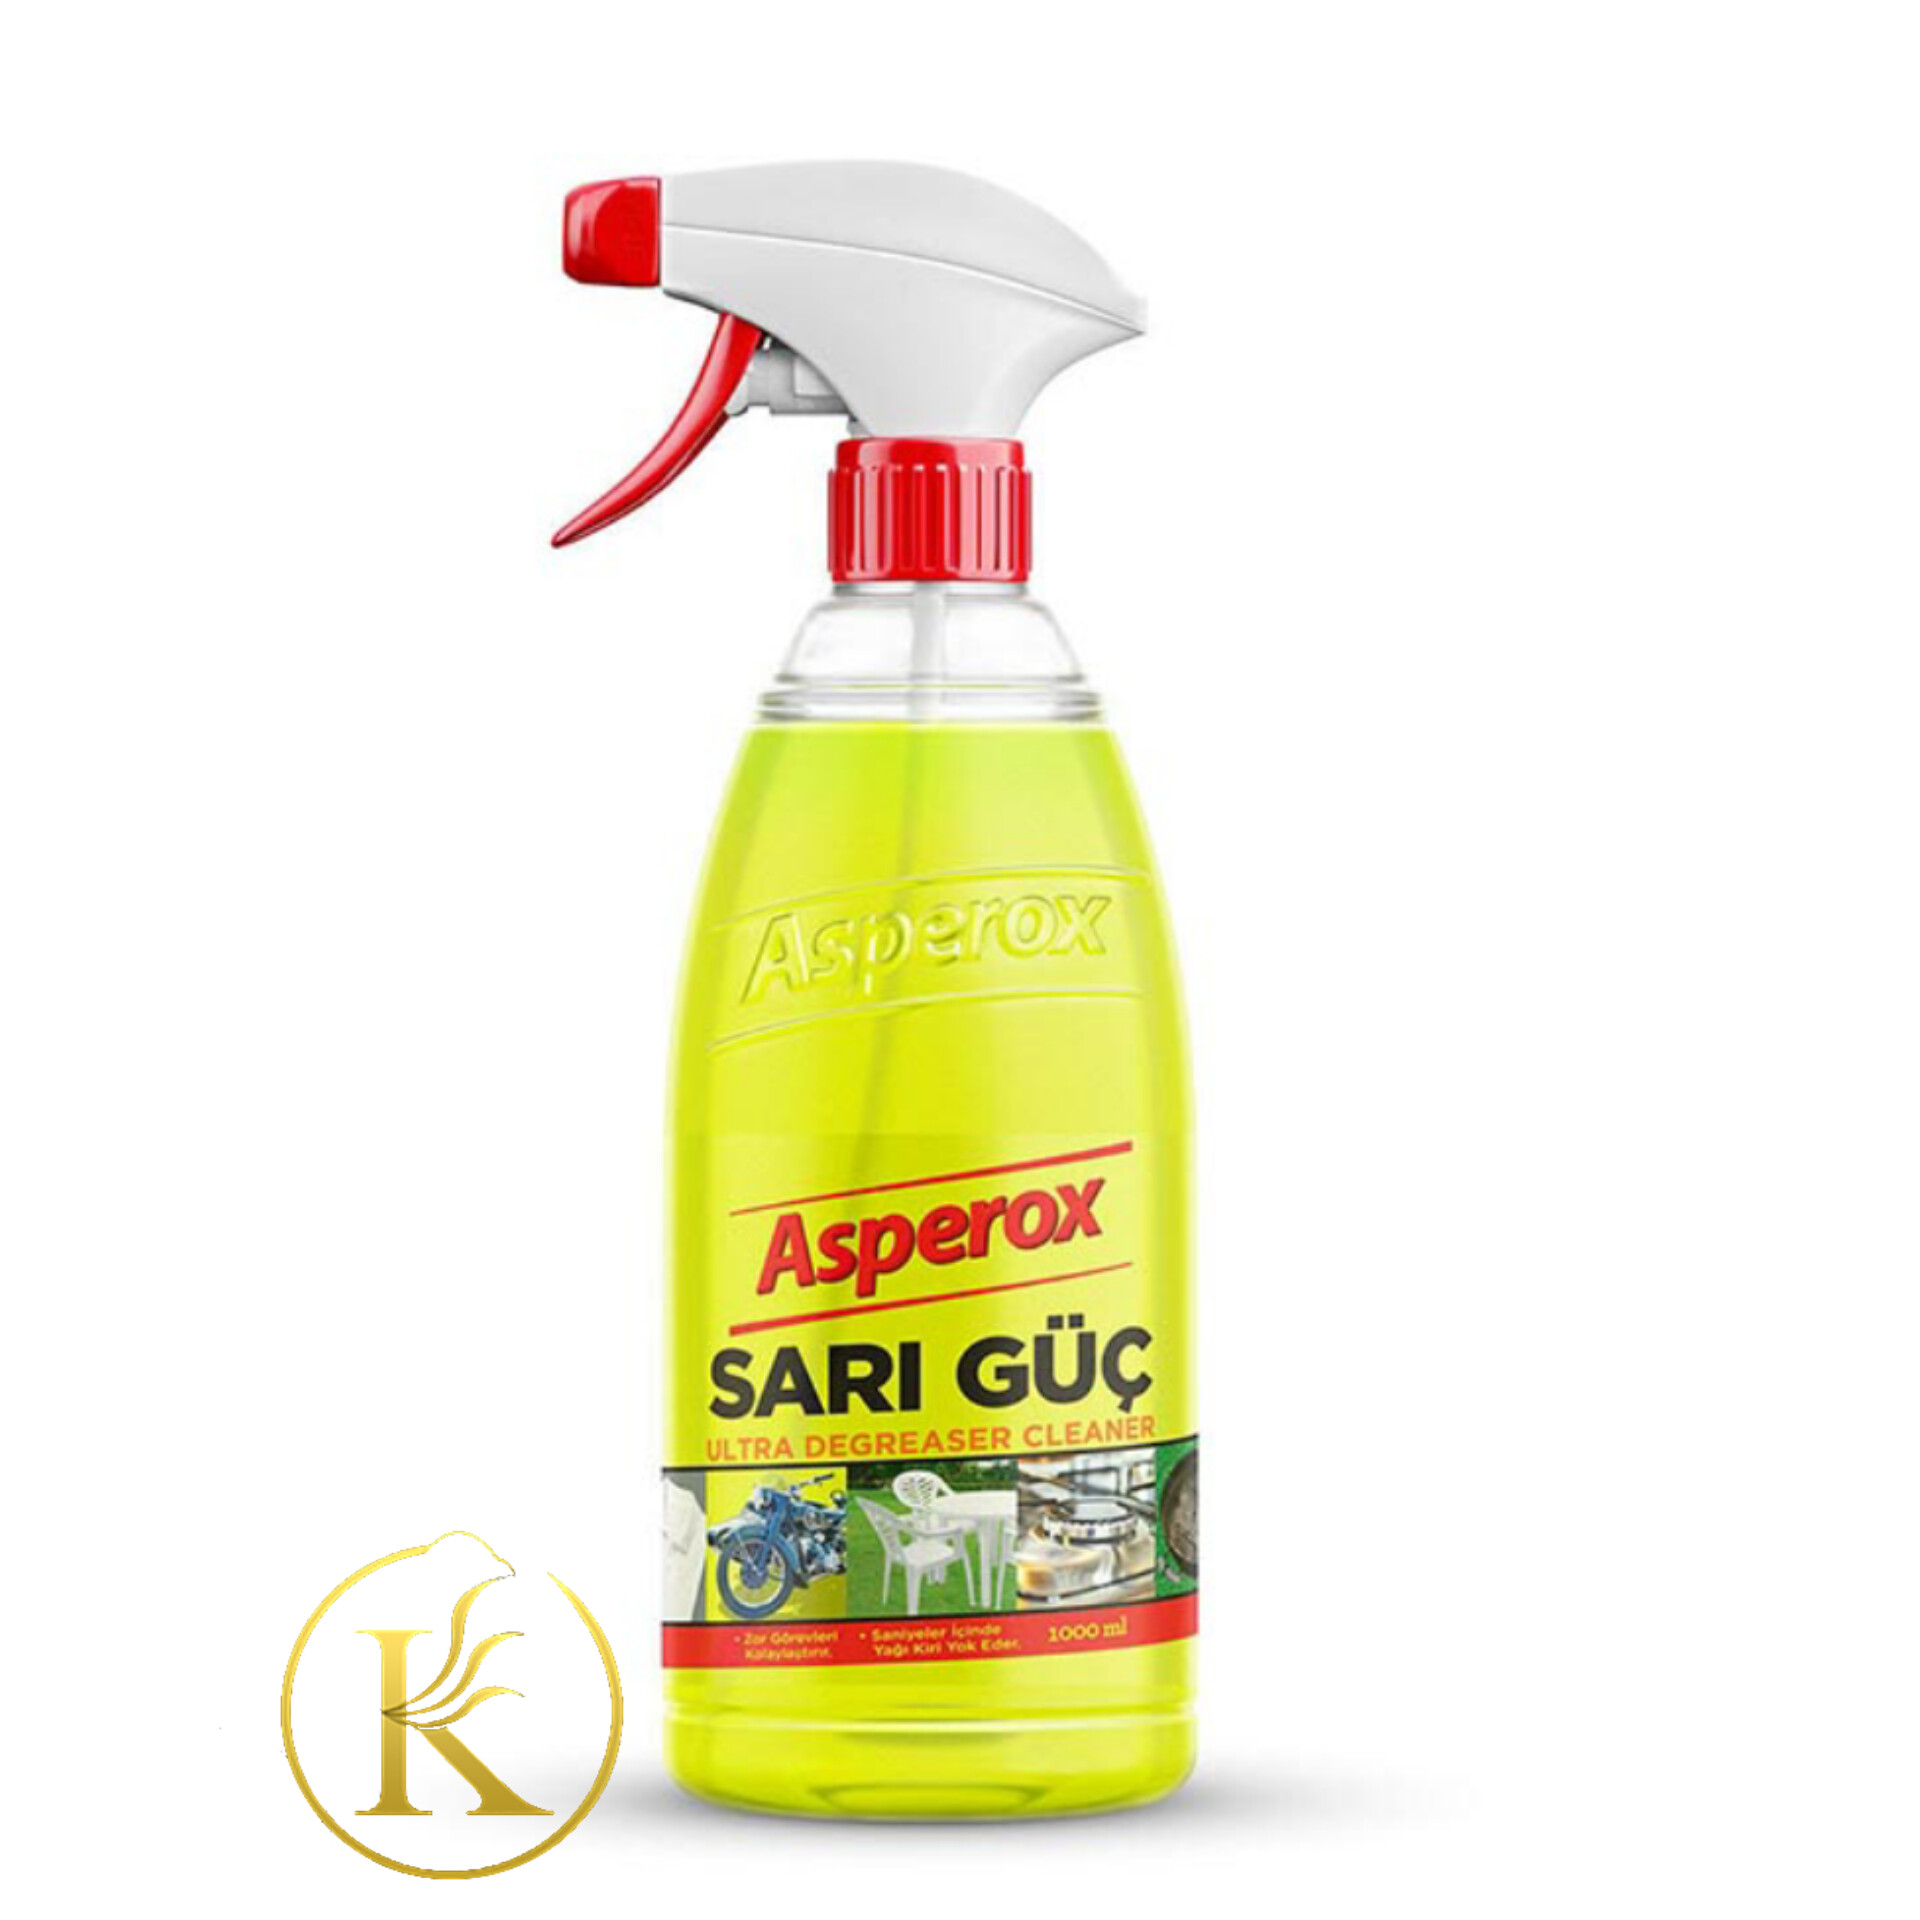 اسپری پاک کننده چربی آسپروکس ساری گوچ یک لیتر asperox sari guc